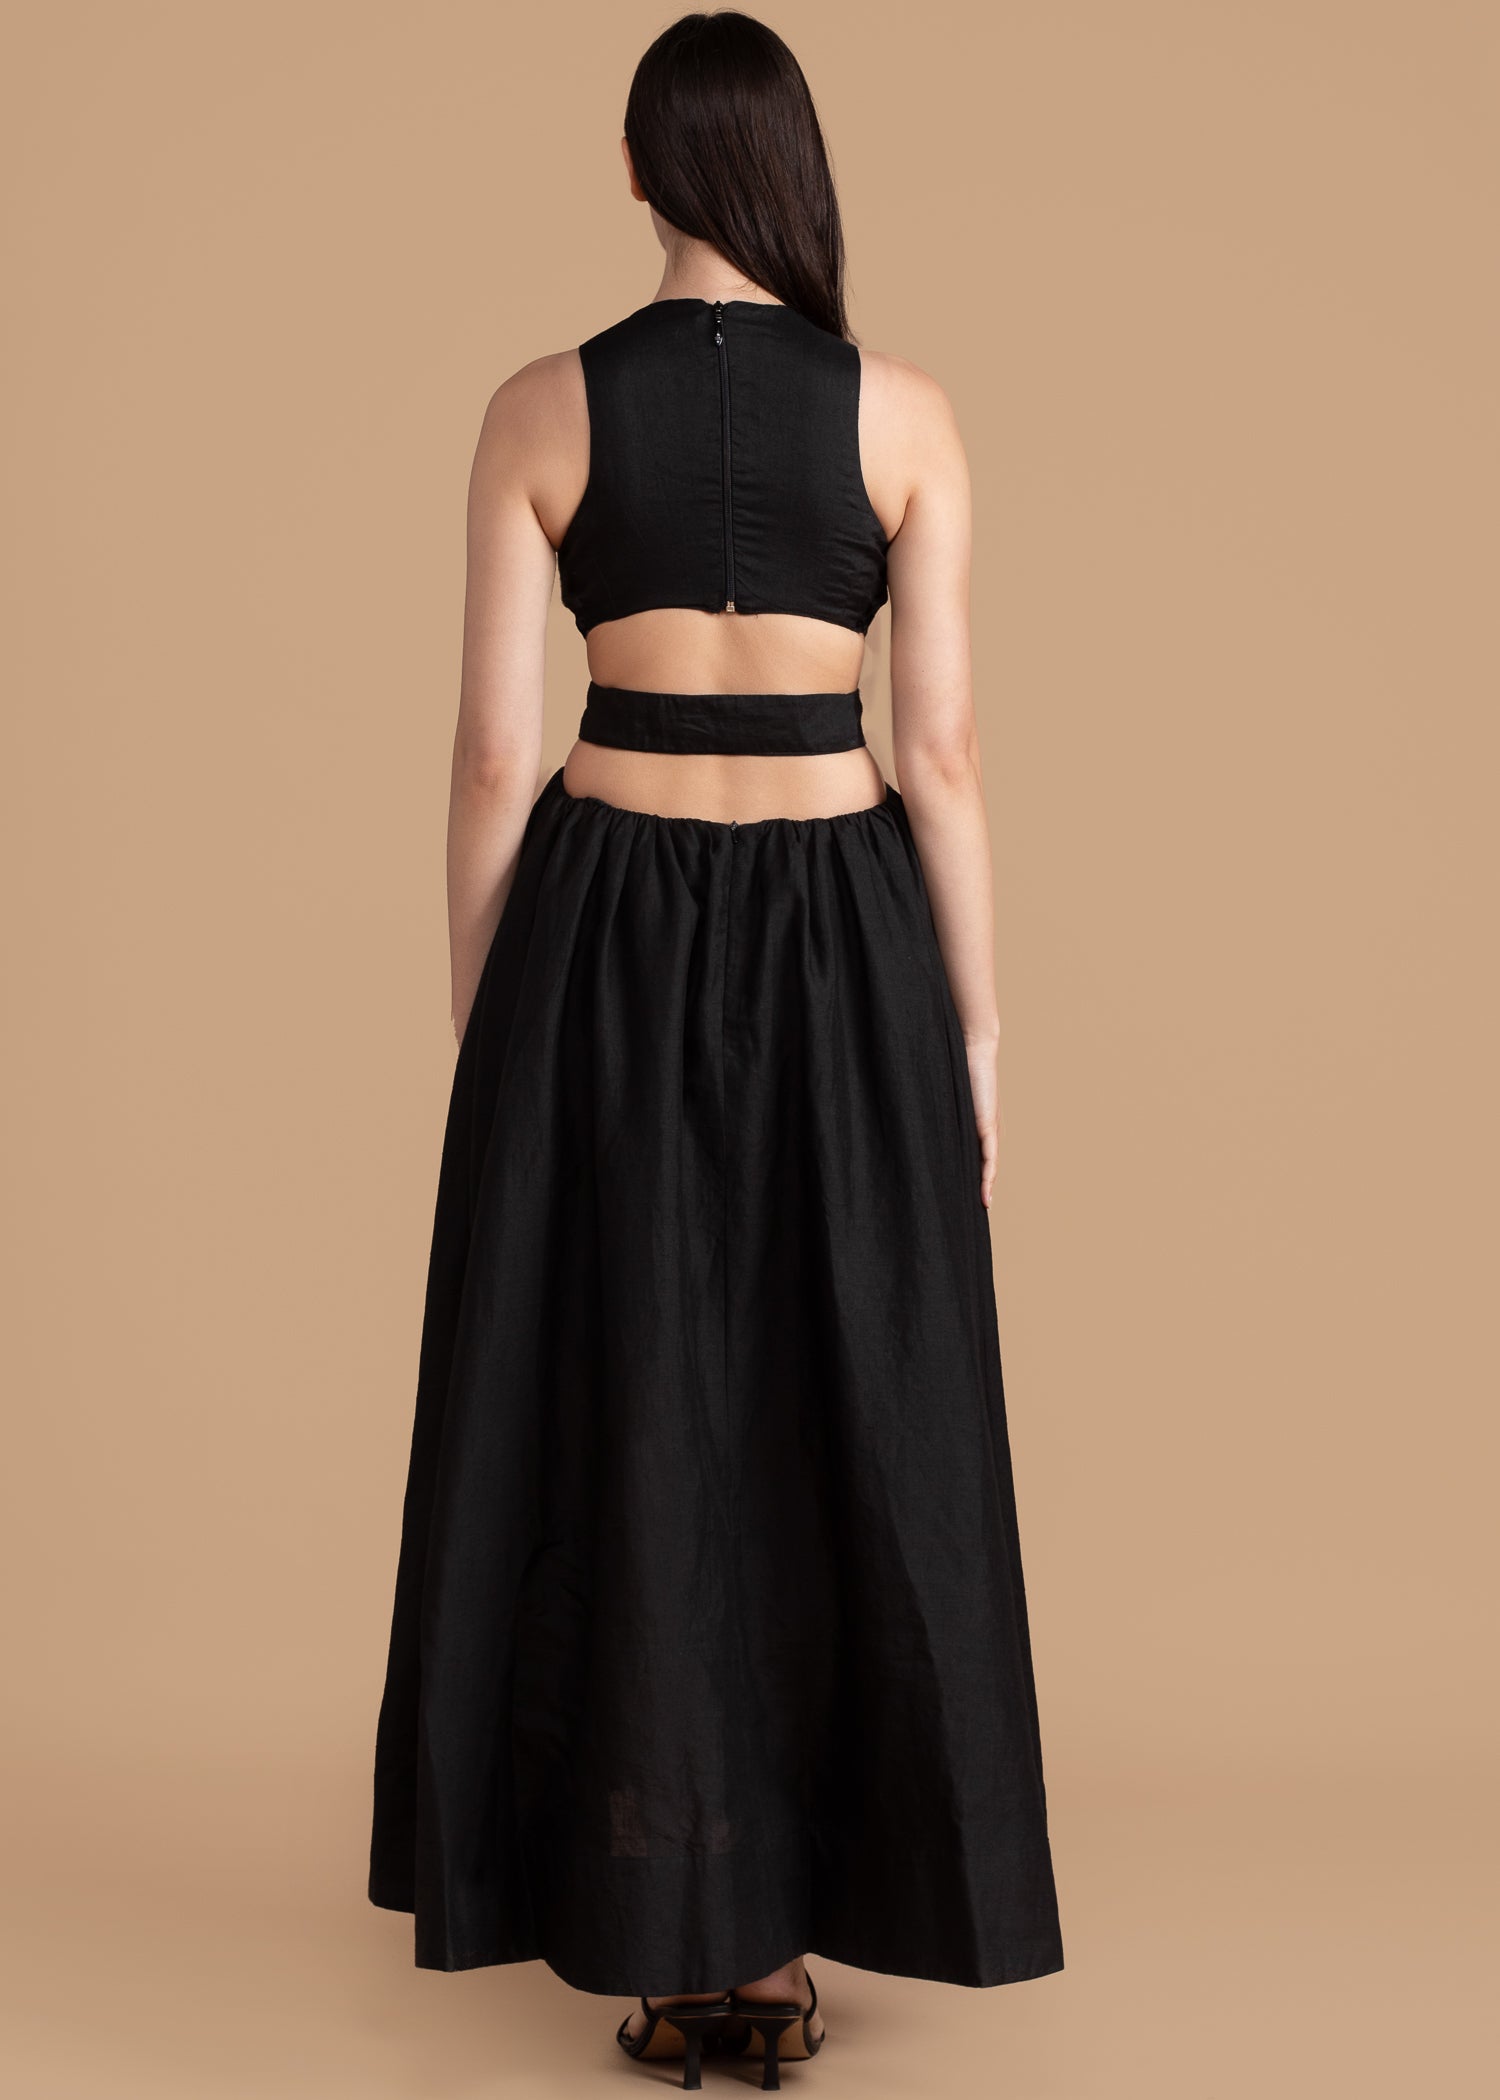 Dalia Black Dress